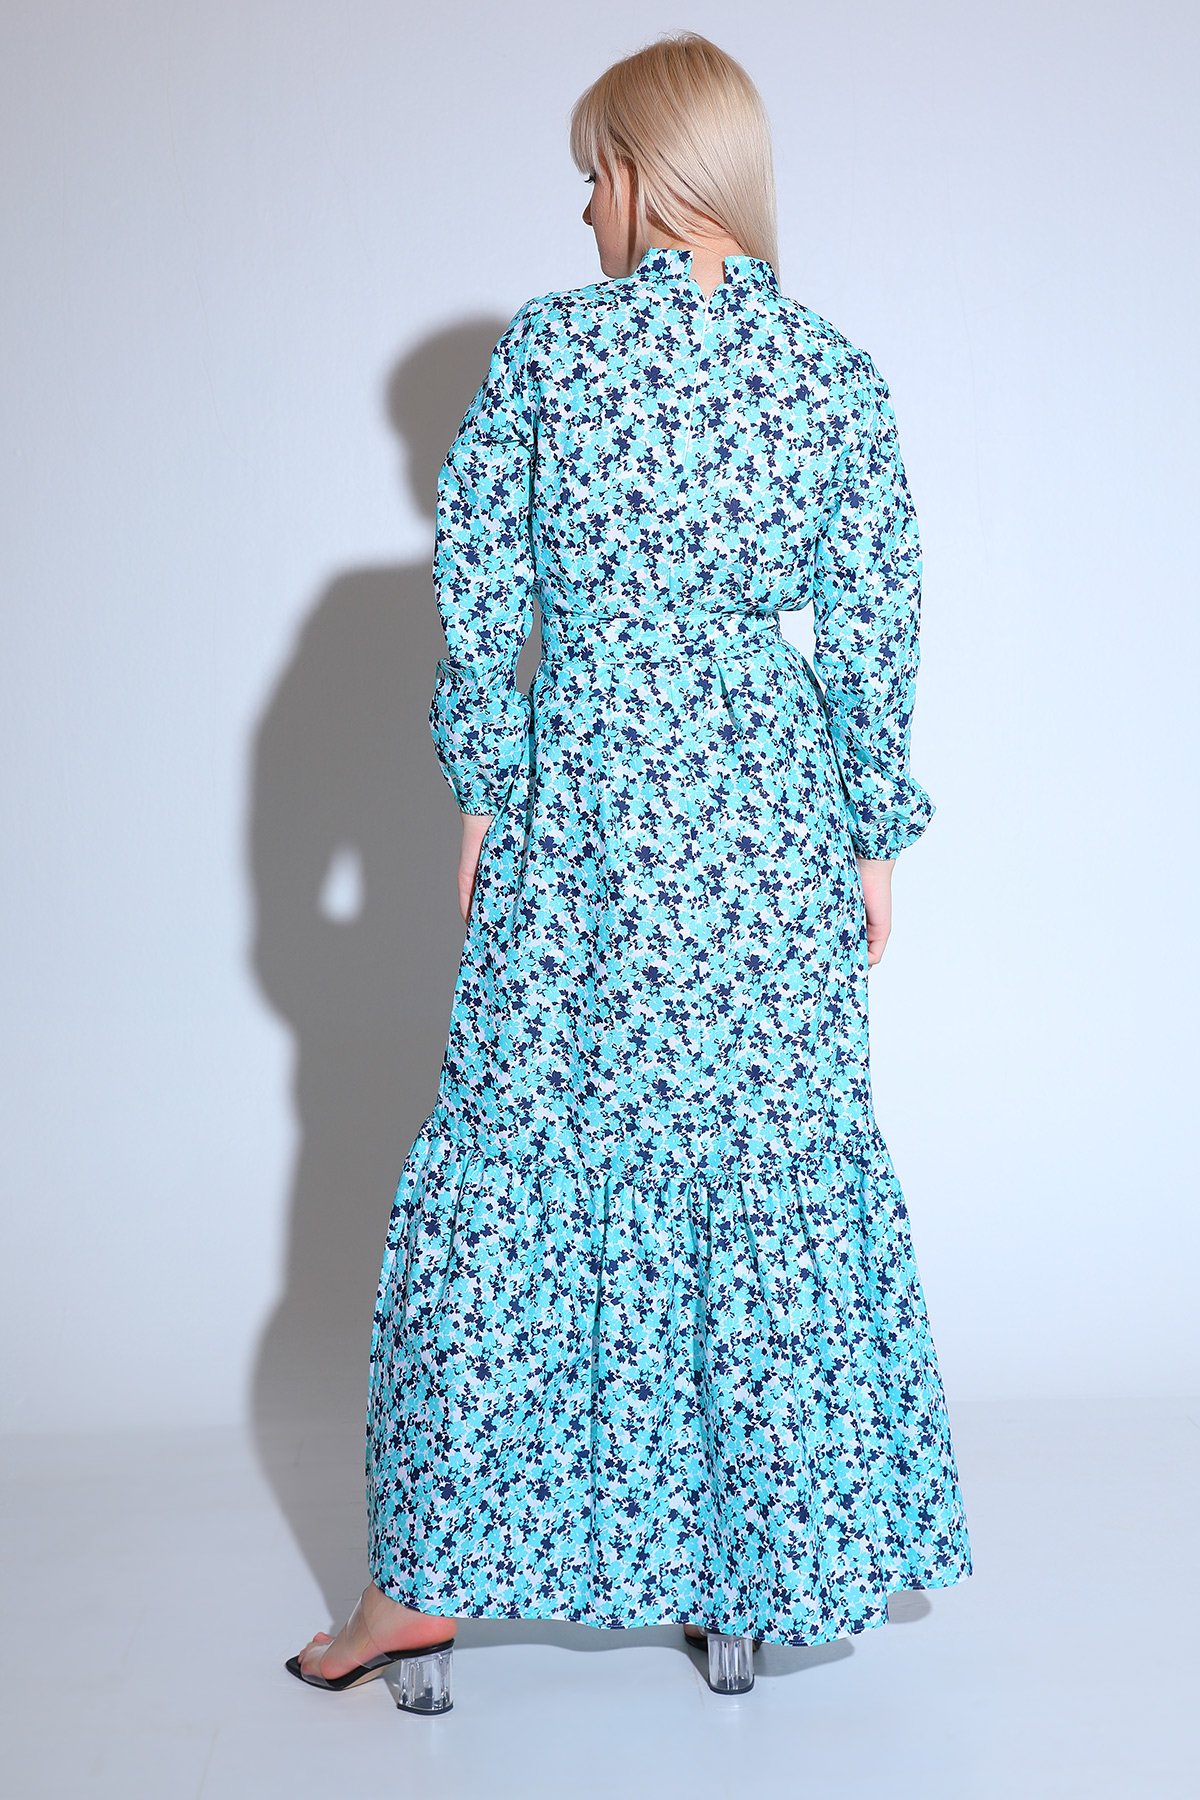 Mint Kadın Modest Eteği Katlı Kol Lastikli Desenli Yazlık Tesettür Elbise  478809 - tozlu.com